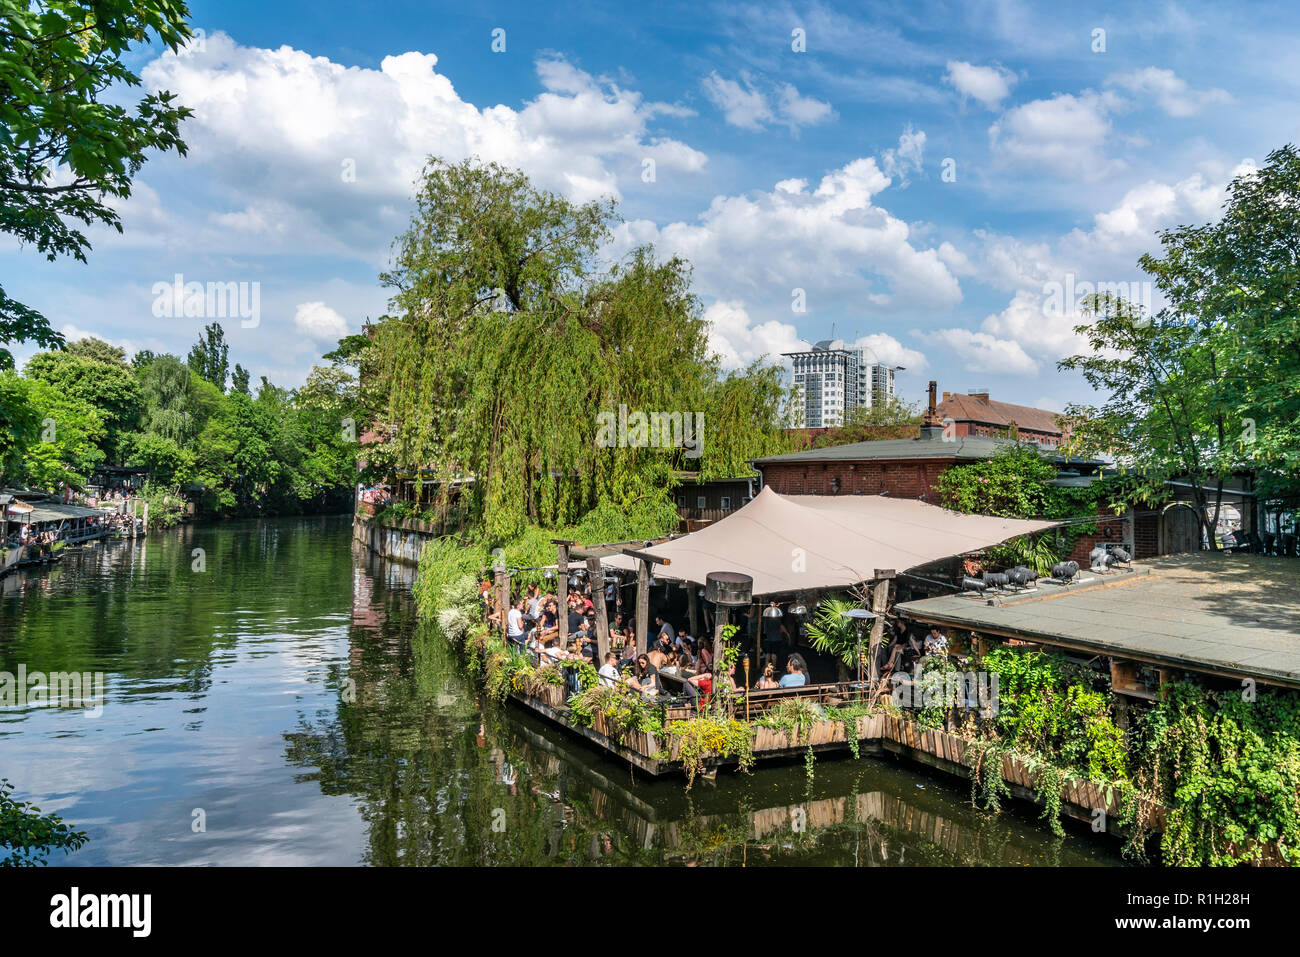 Spree Canal, Club der Visionaere, Techno club open air, summer, background Freischwimmer, Berlin Kreuzberg Stock Photo